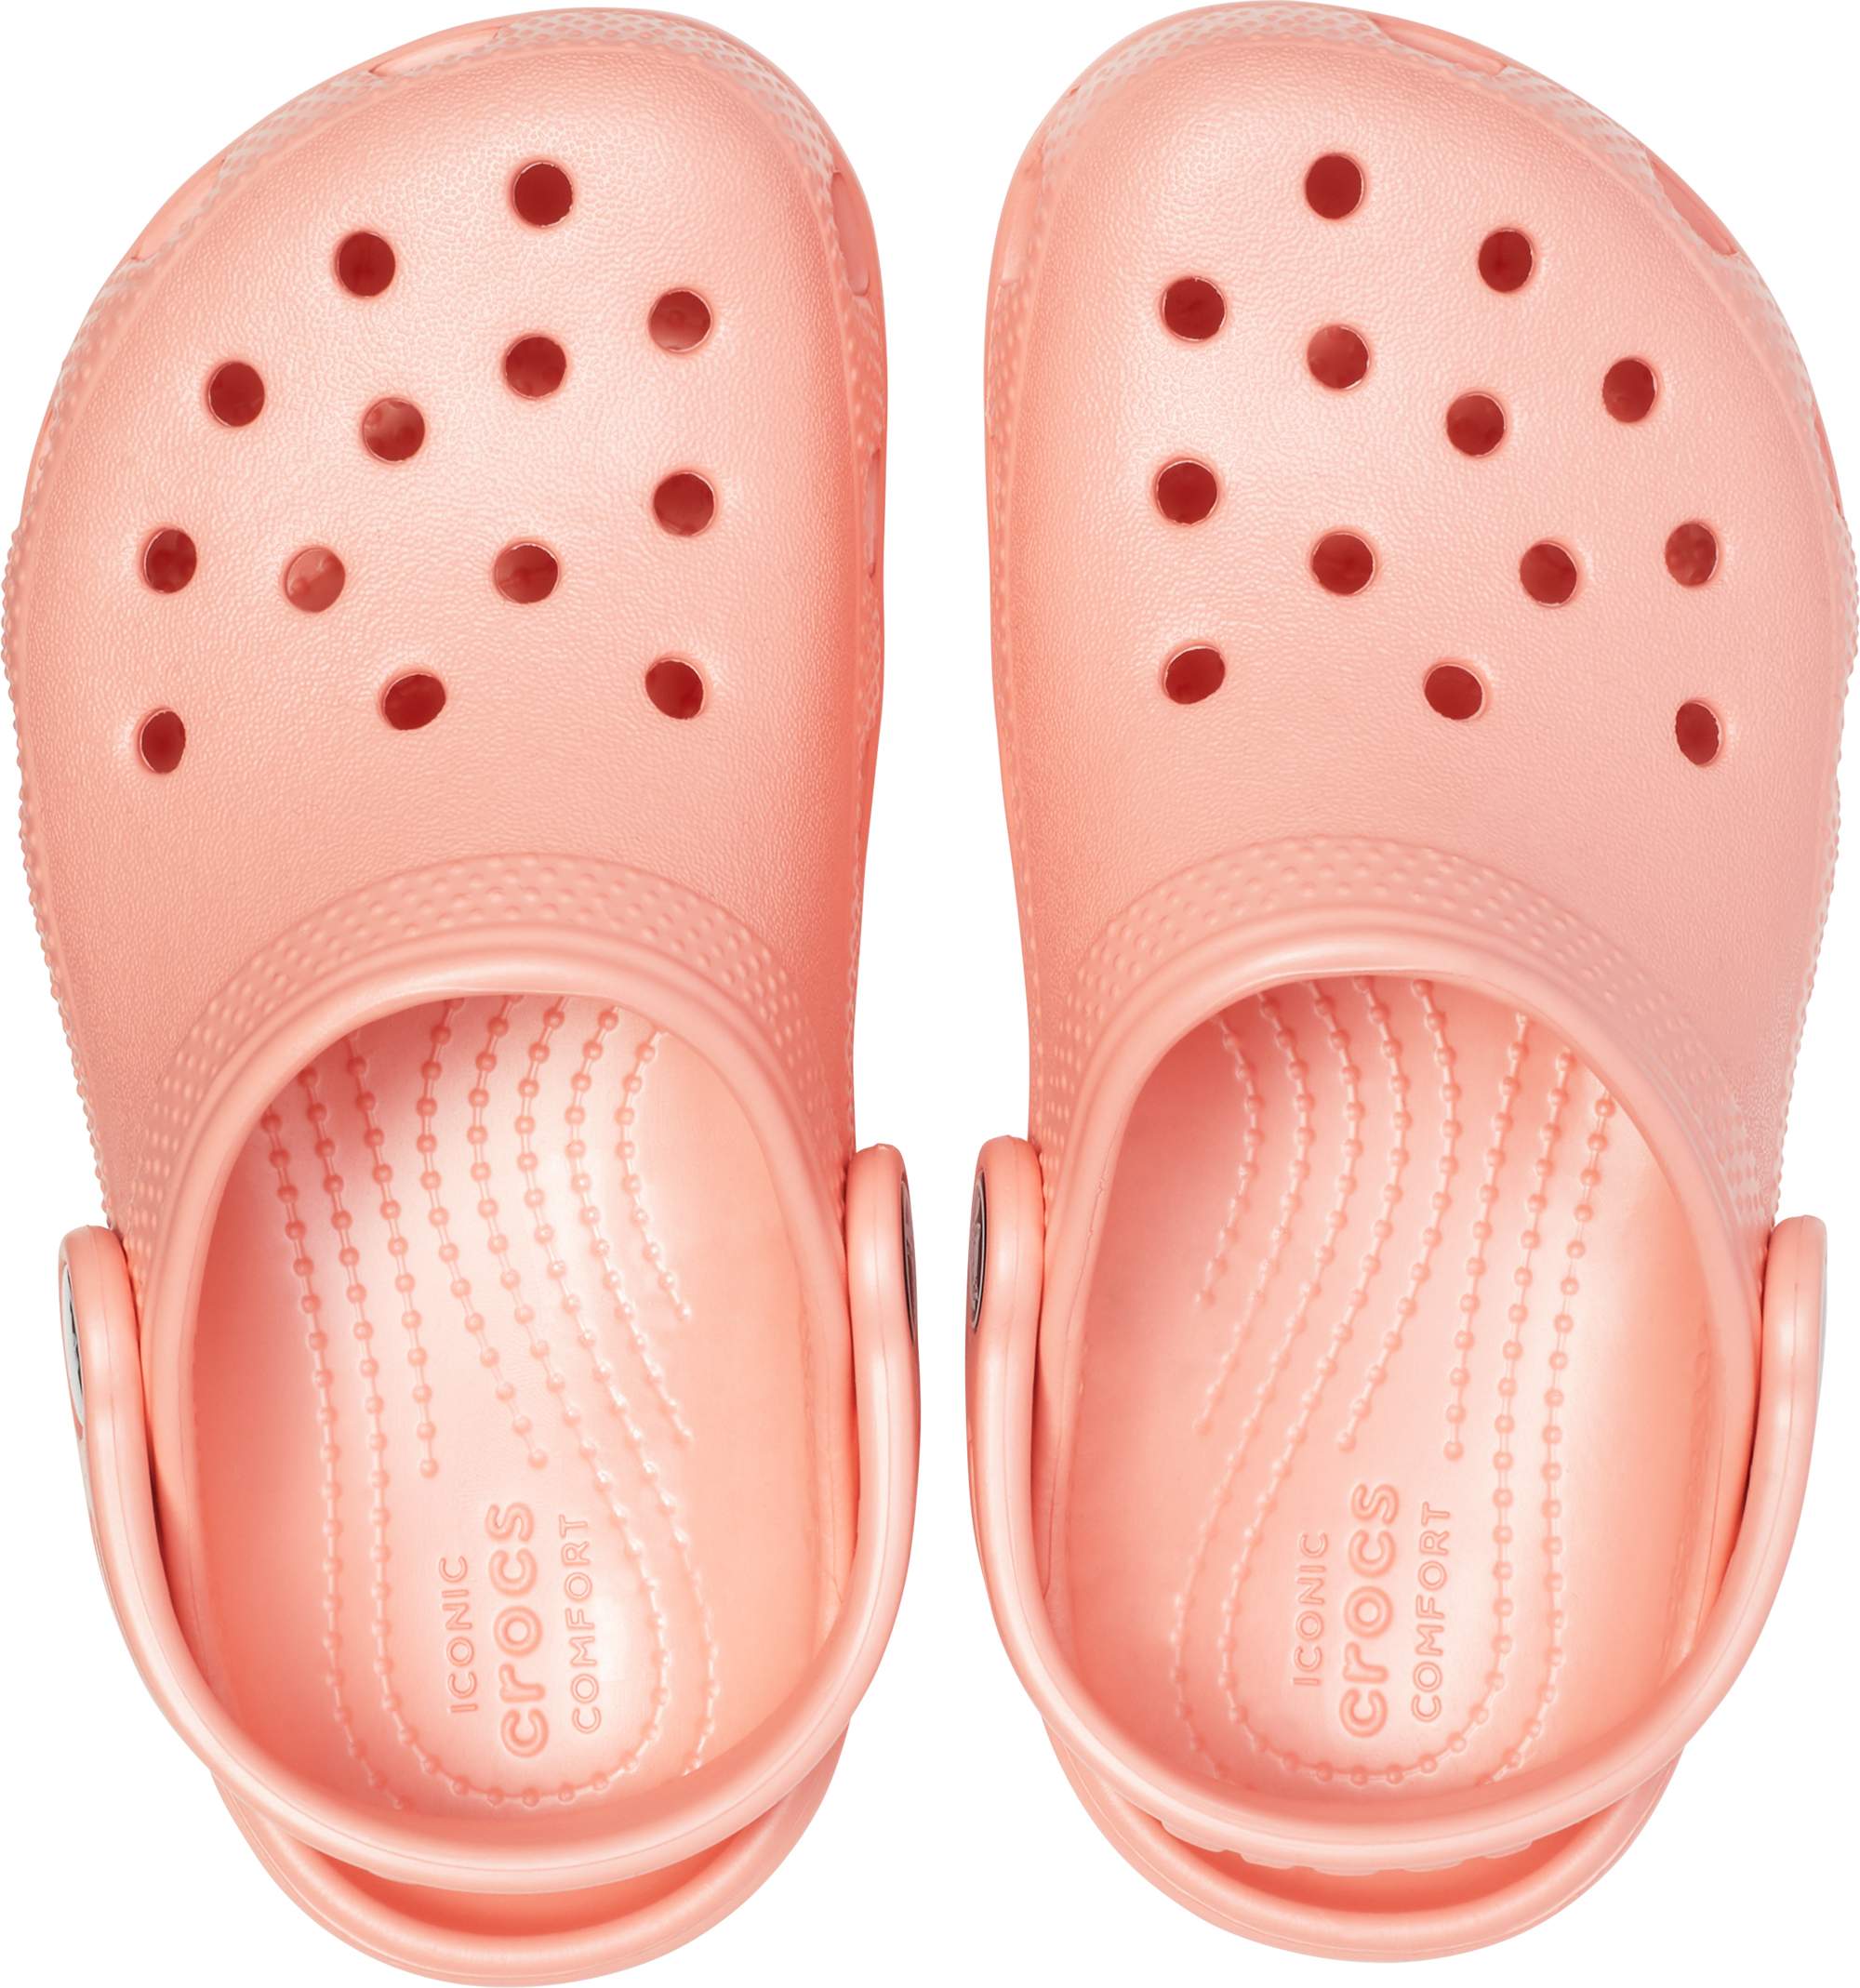 crocs top